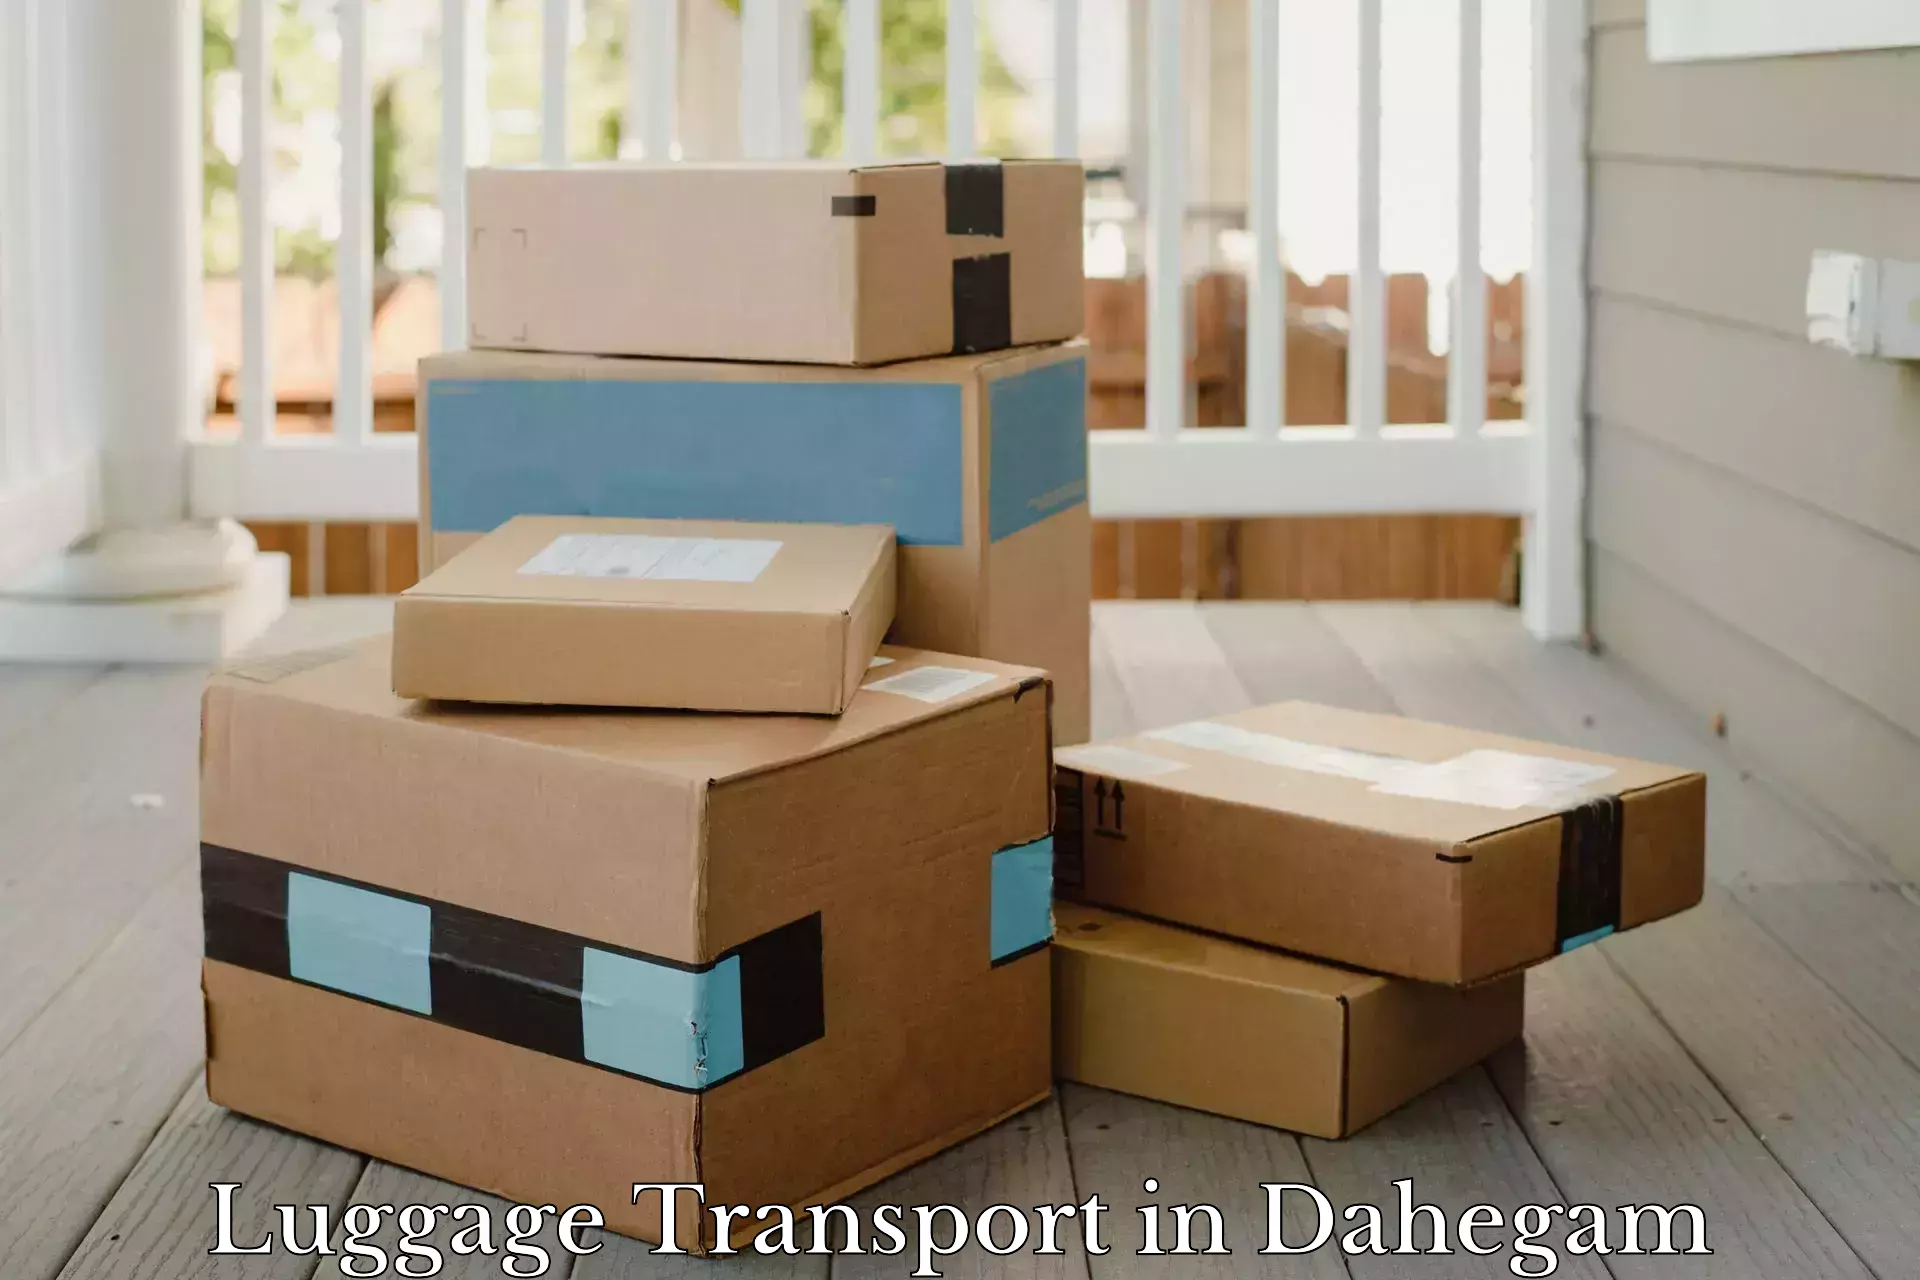 Luggage delivery app in Dahegam